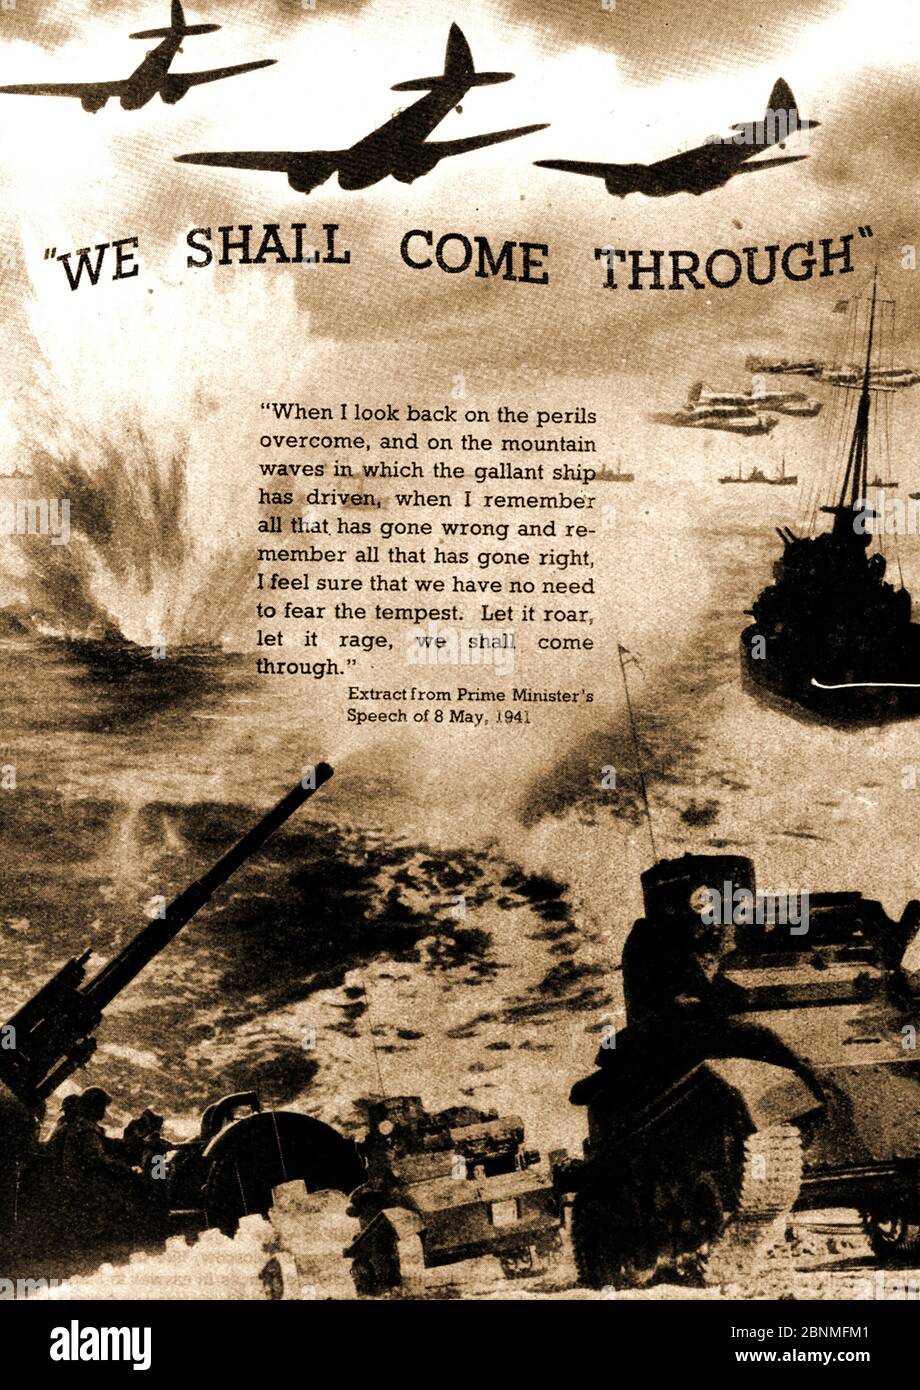 WWII - EIN gedrucktes Bild von 1941, das eine bildhafte Erinnerung an Winston Churchills Rede vom 8. Mai 1941 zeigt - 'We shall come through' Stockfoto